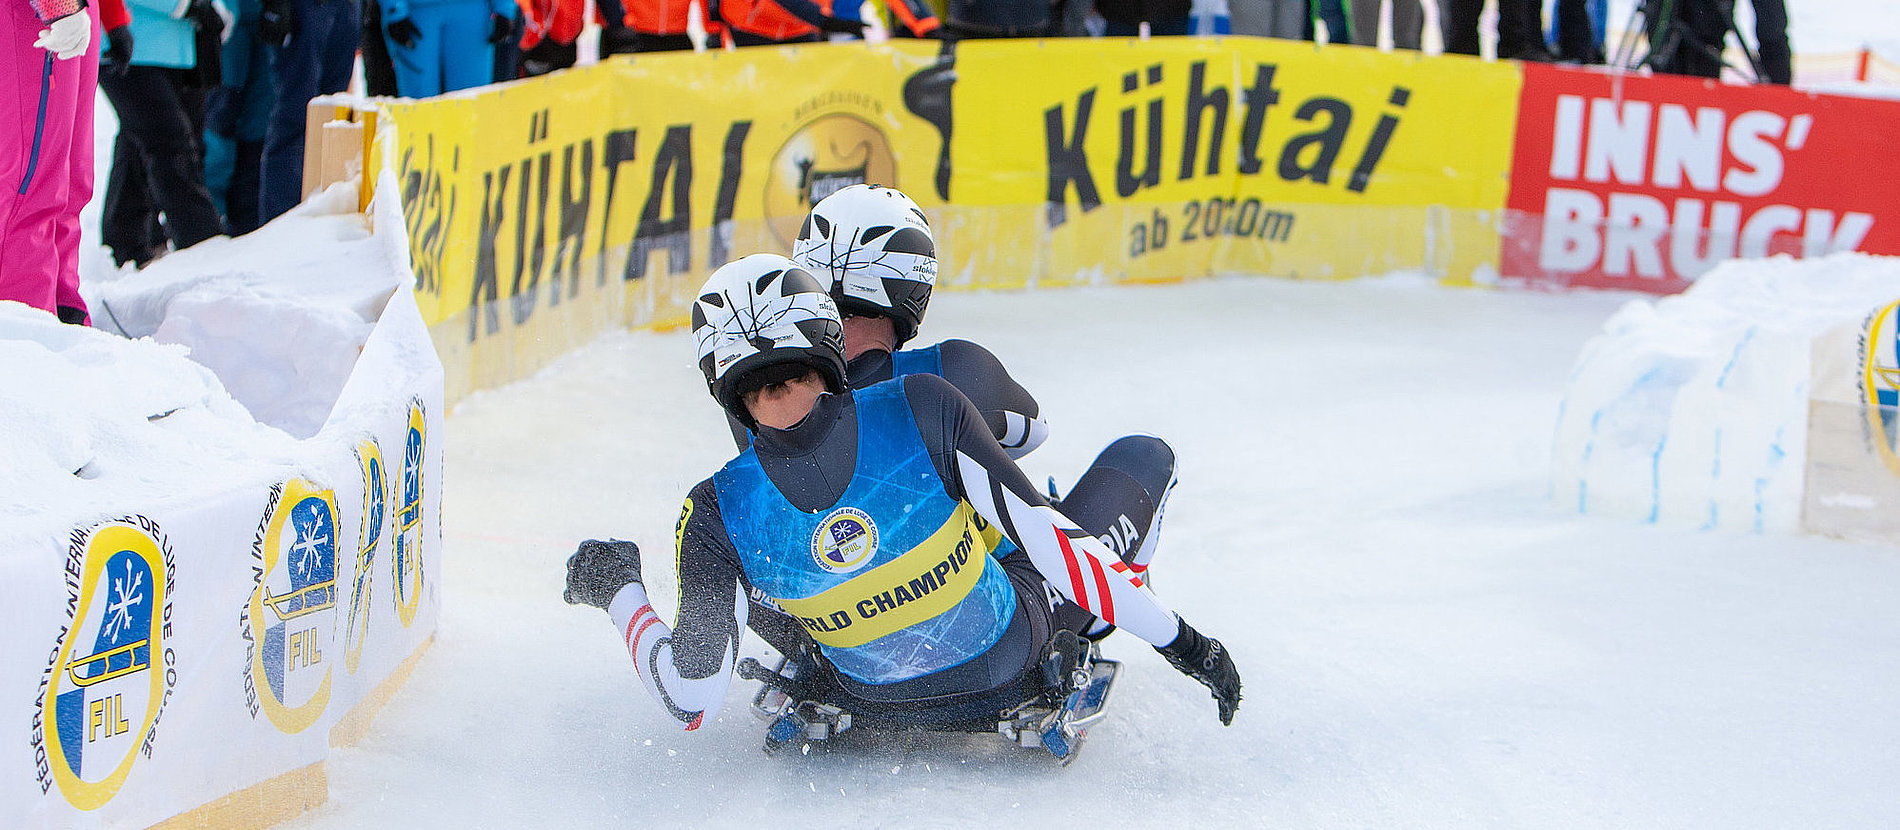 Rupert Brüggler / Tobias Angerer beim Weltcup in Kühtai 2018